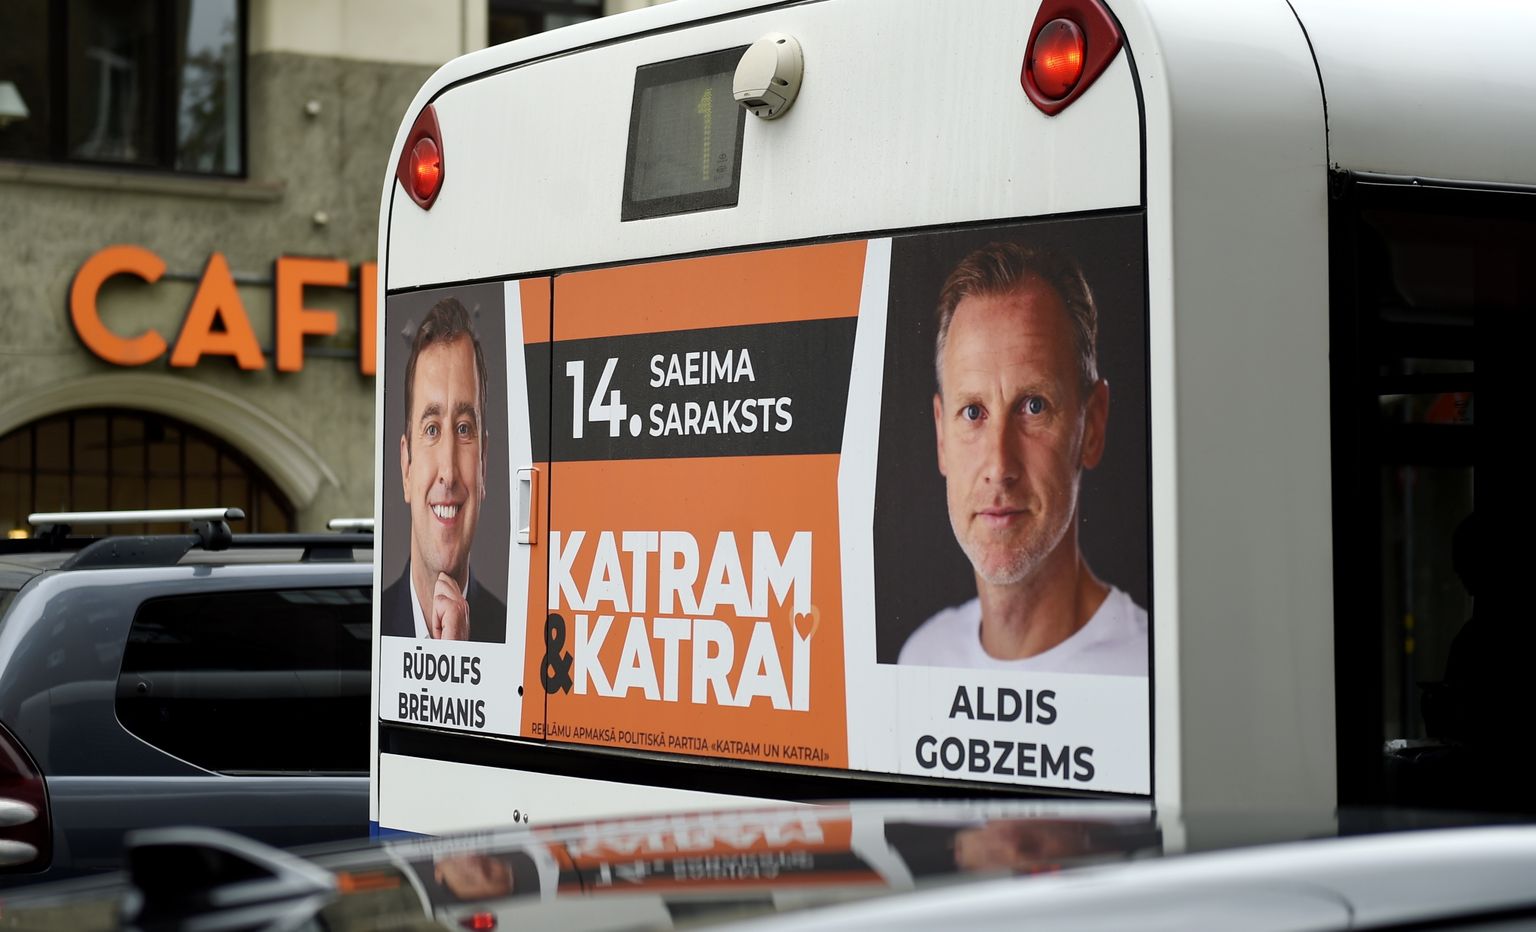 Реклама партии "Каждому и каждой" на общественном транспорте. Глава партии - Алдис Гобземс.